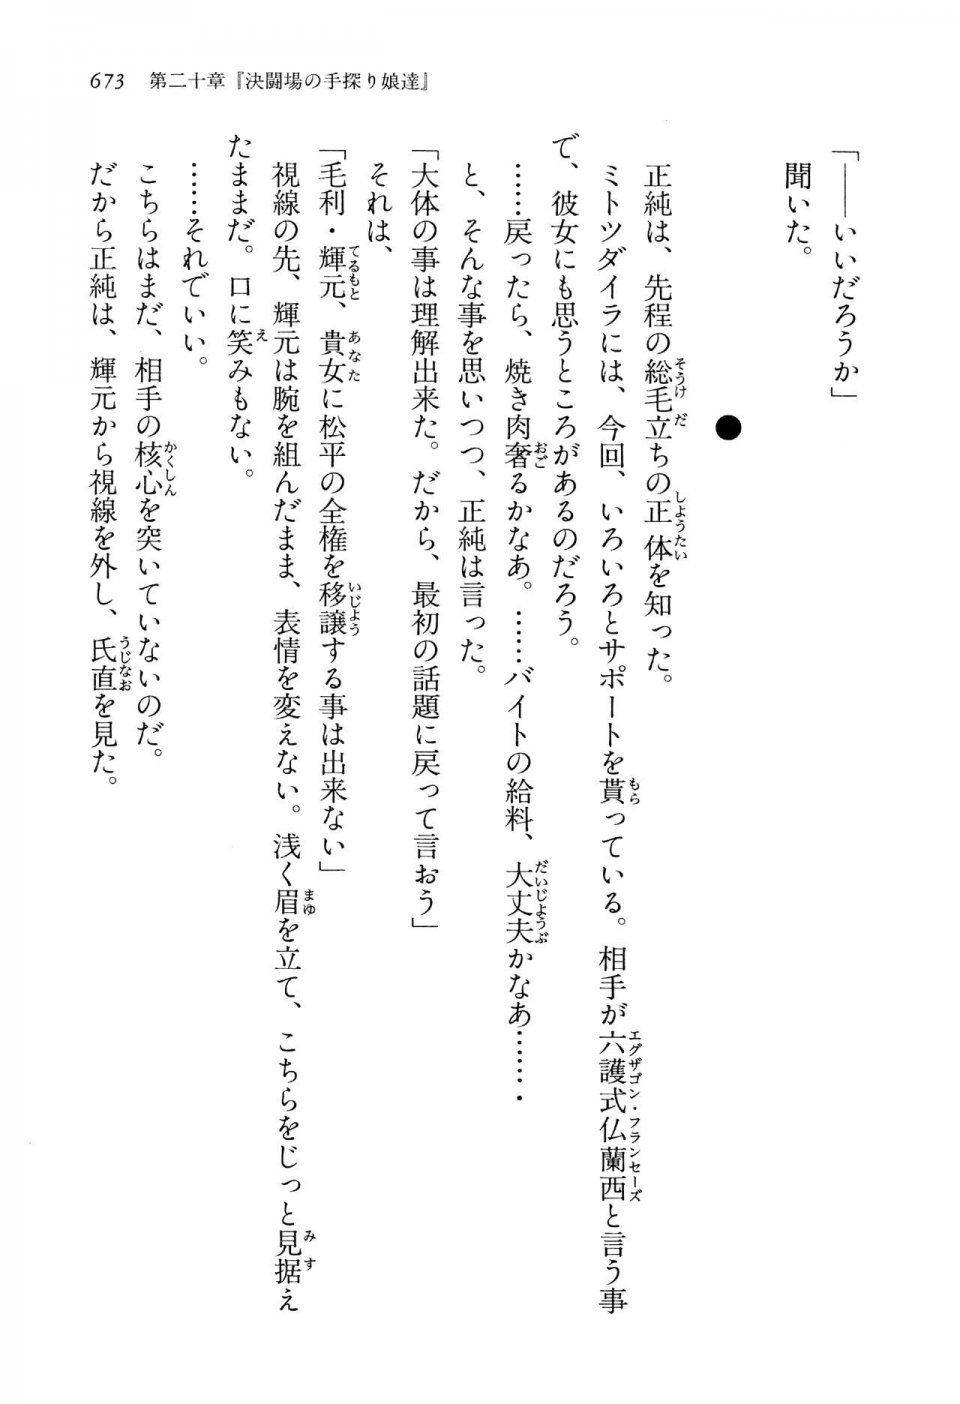 Kyoukai Senjou no Horizon LN Vol 13(6A) - Photo #673